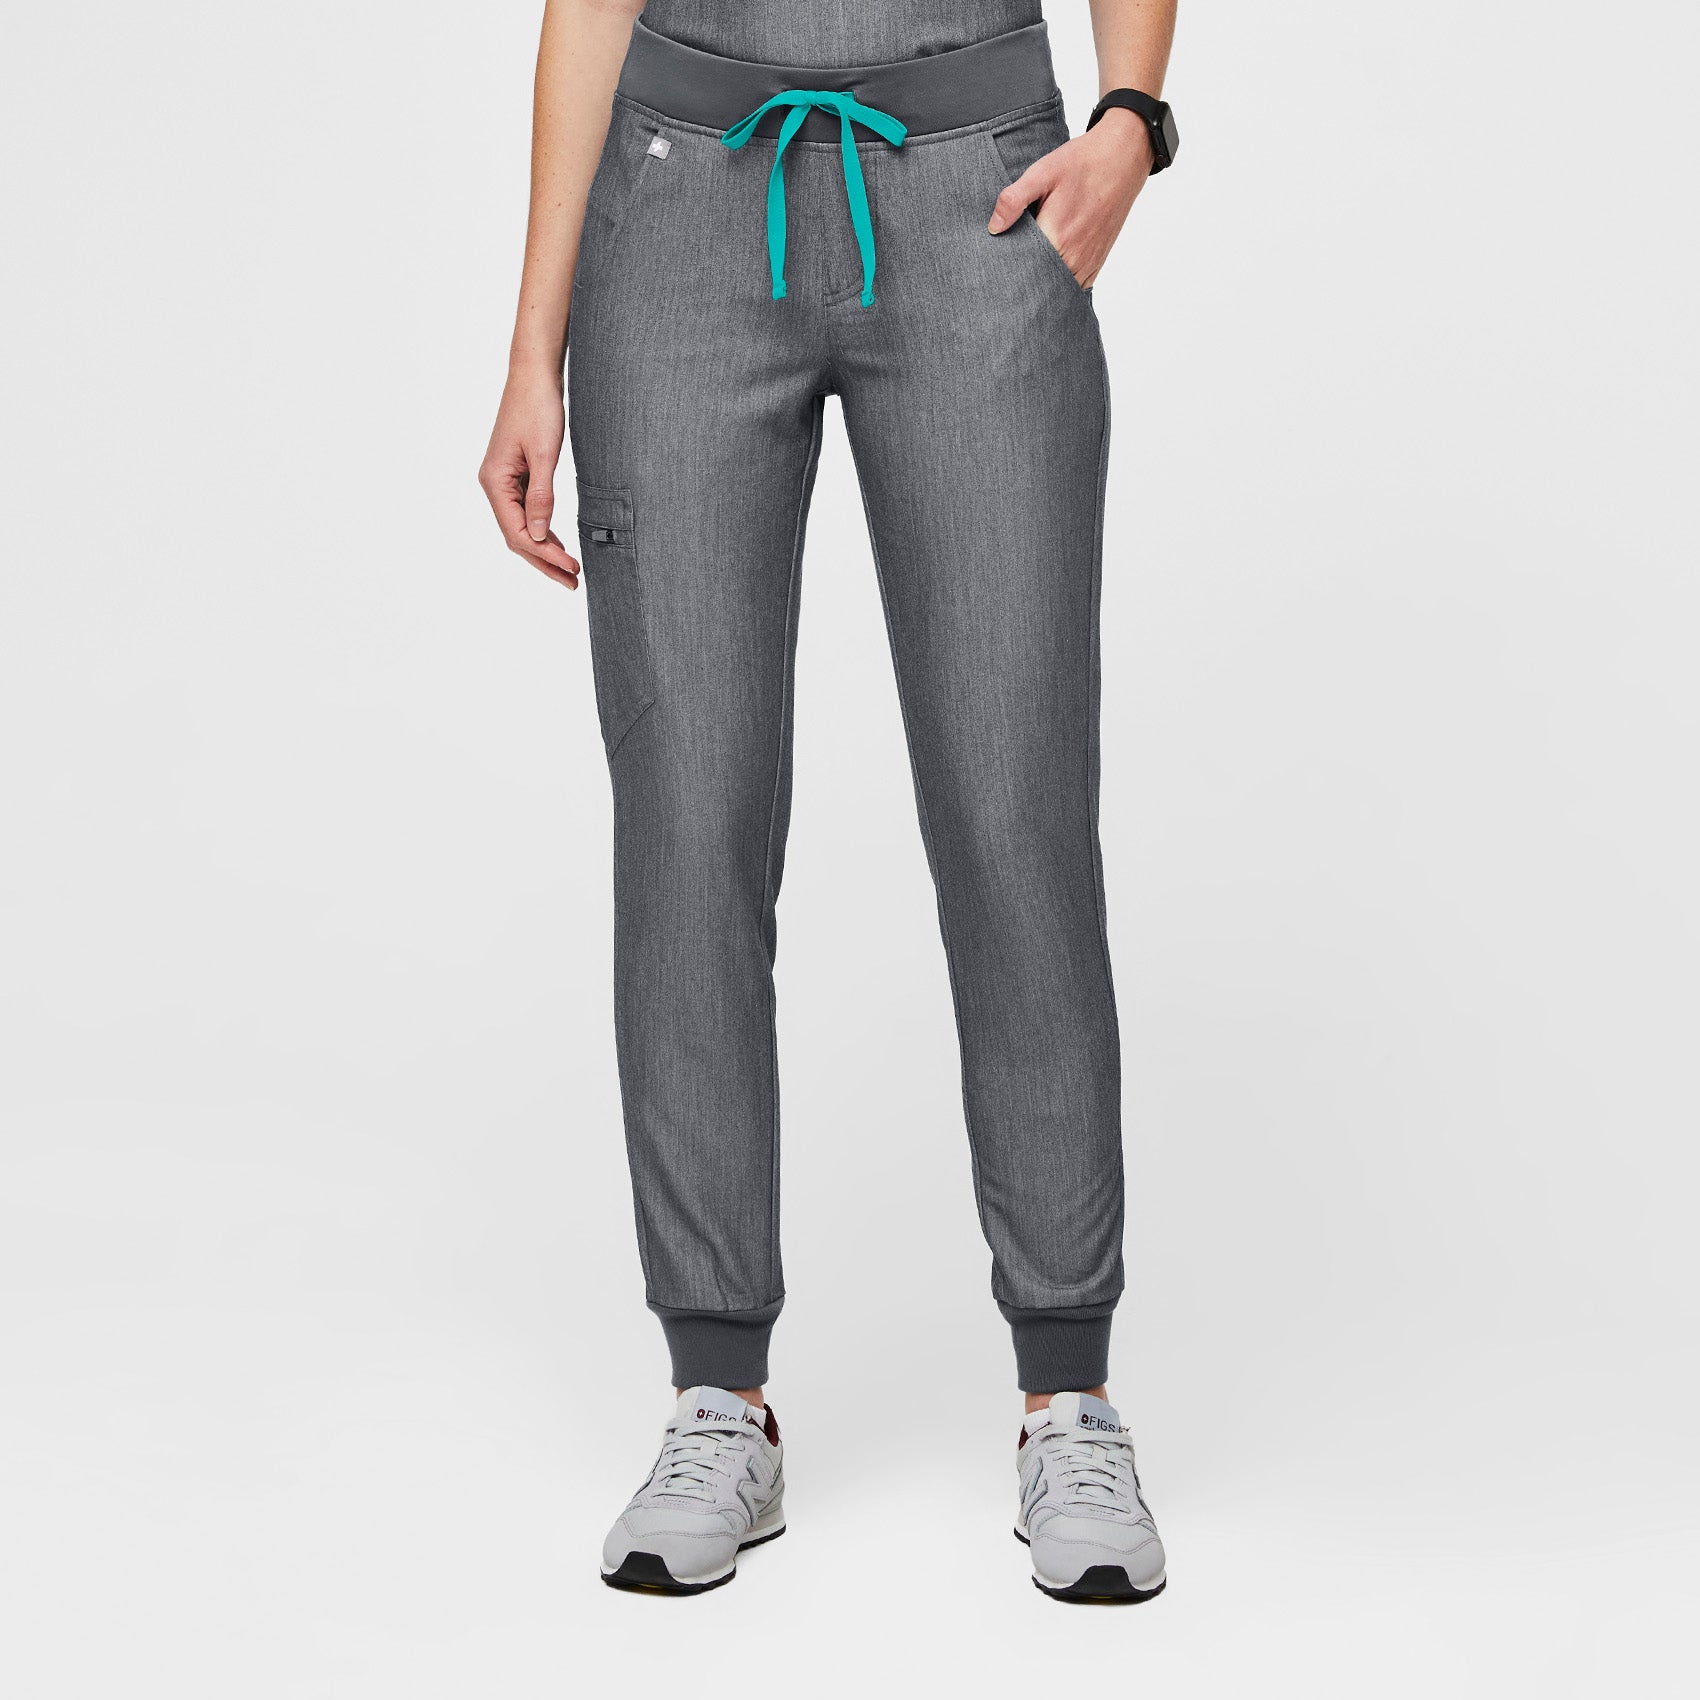 Figs Zamora Jogger Scrub Pants Graphite Grey Size XS Women's